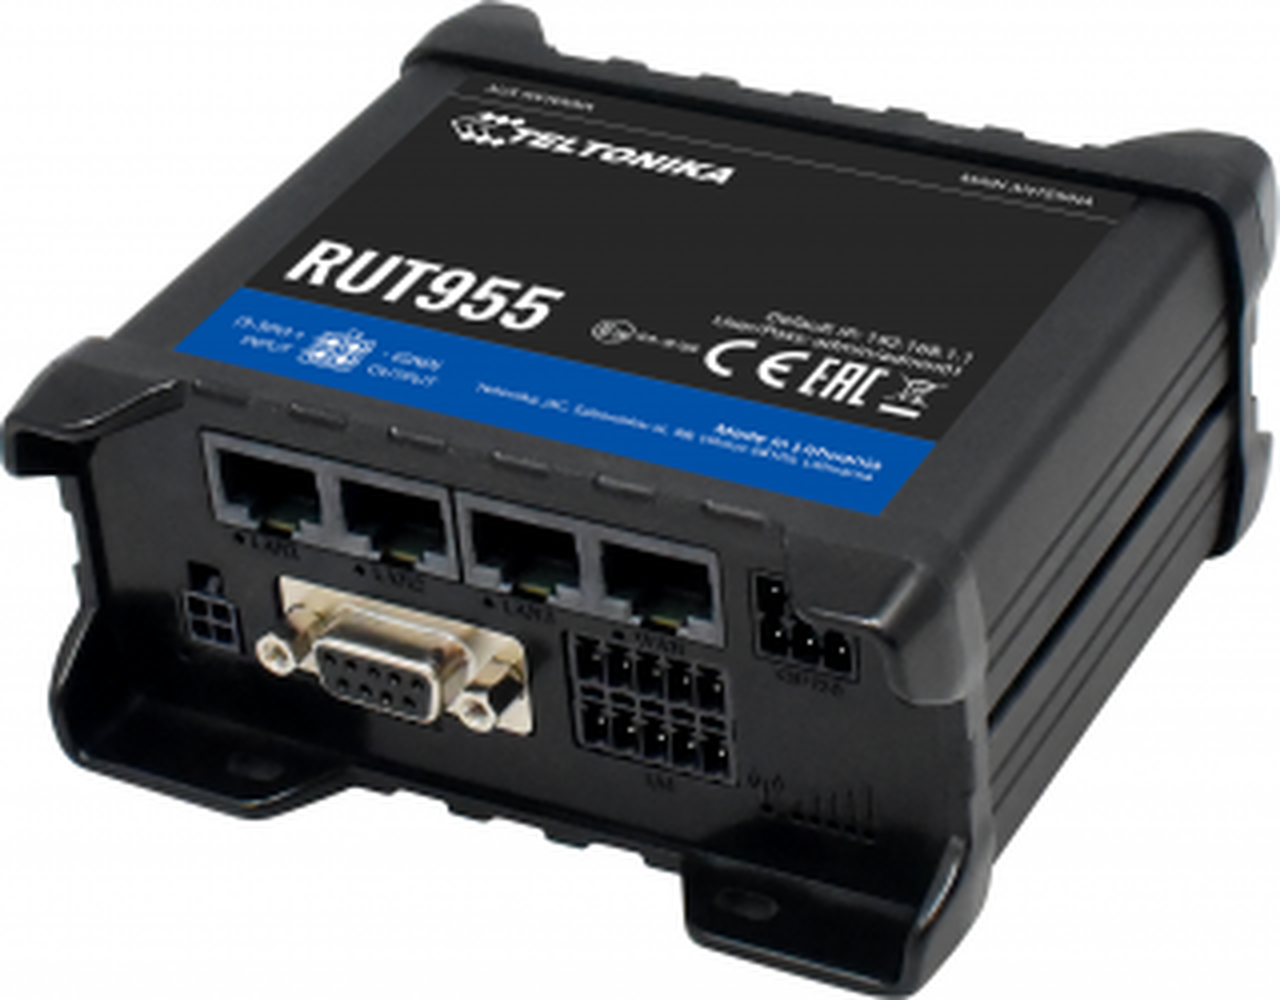 router-4g-lte-rut955-h-compratecno